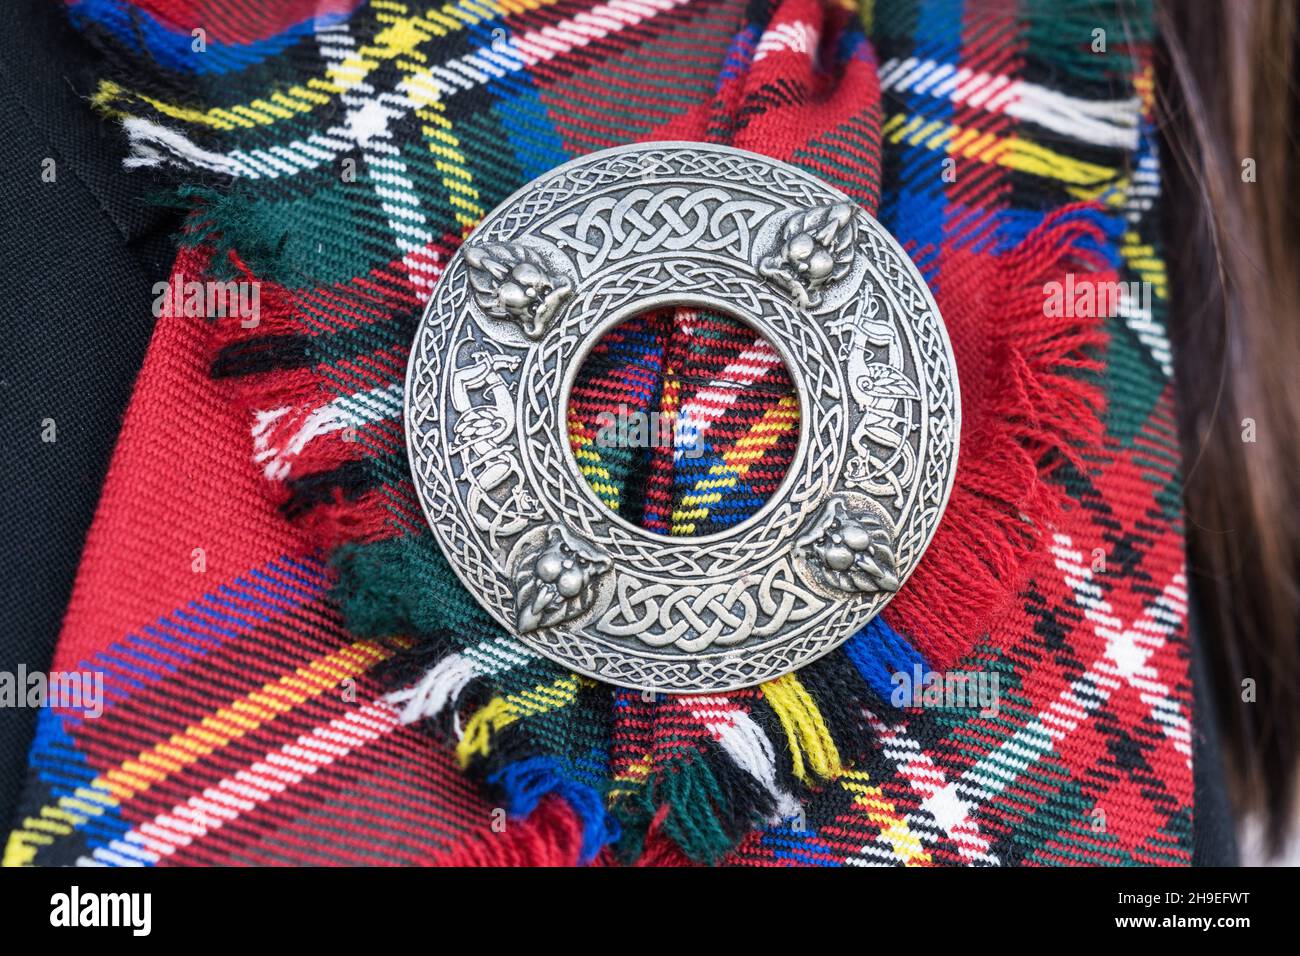 Détail d'un écusson sur une barre en tissu écossais tartan d'une tenue traditionnelle des Highlands Scots. Banque D'Images